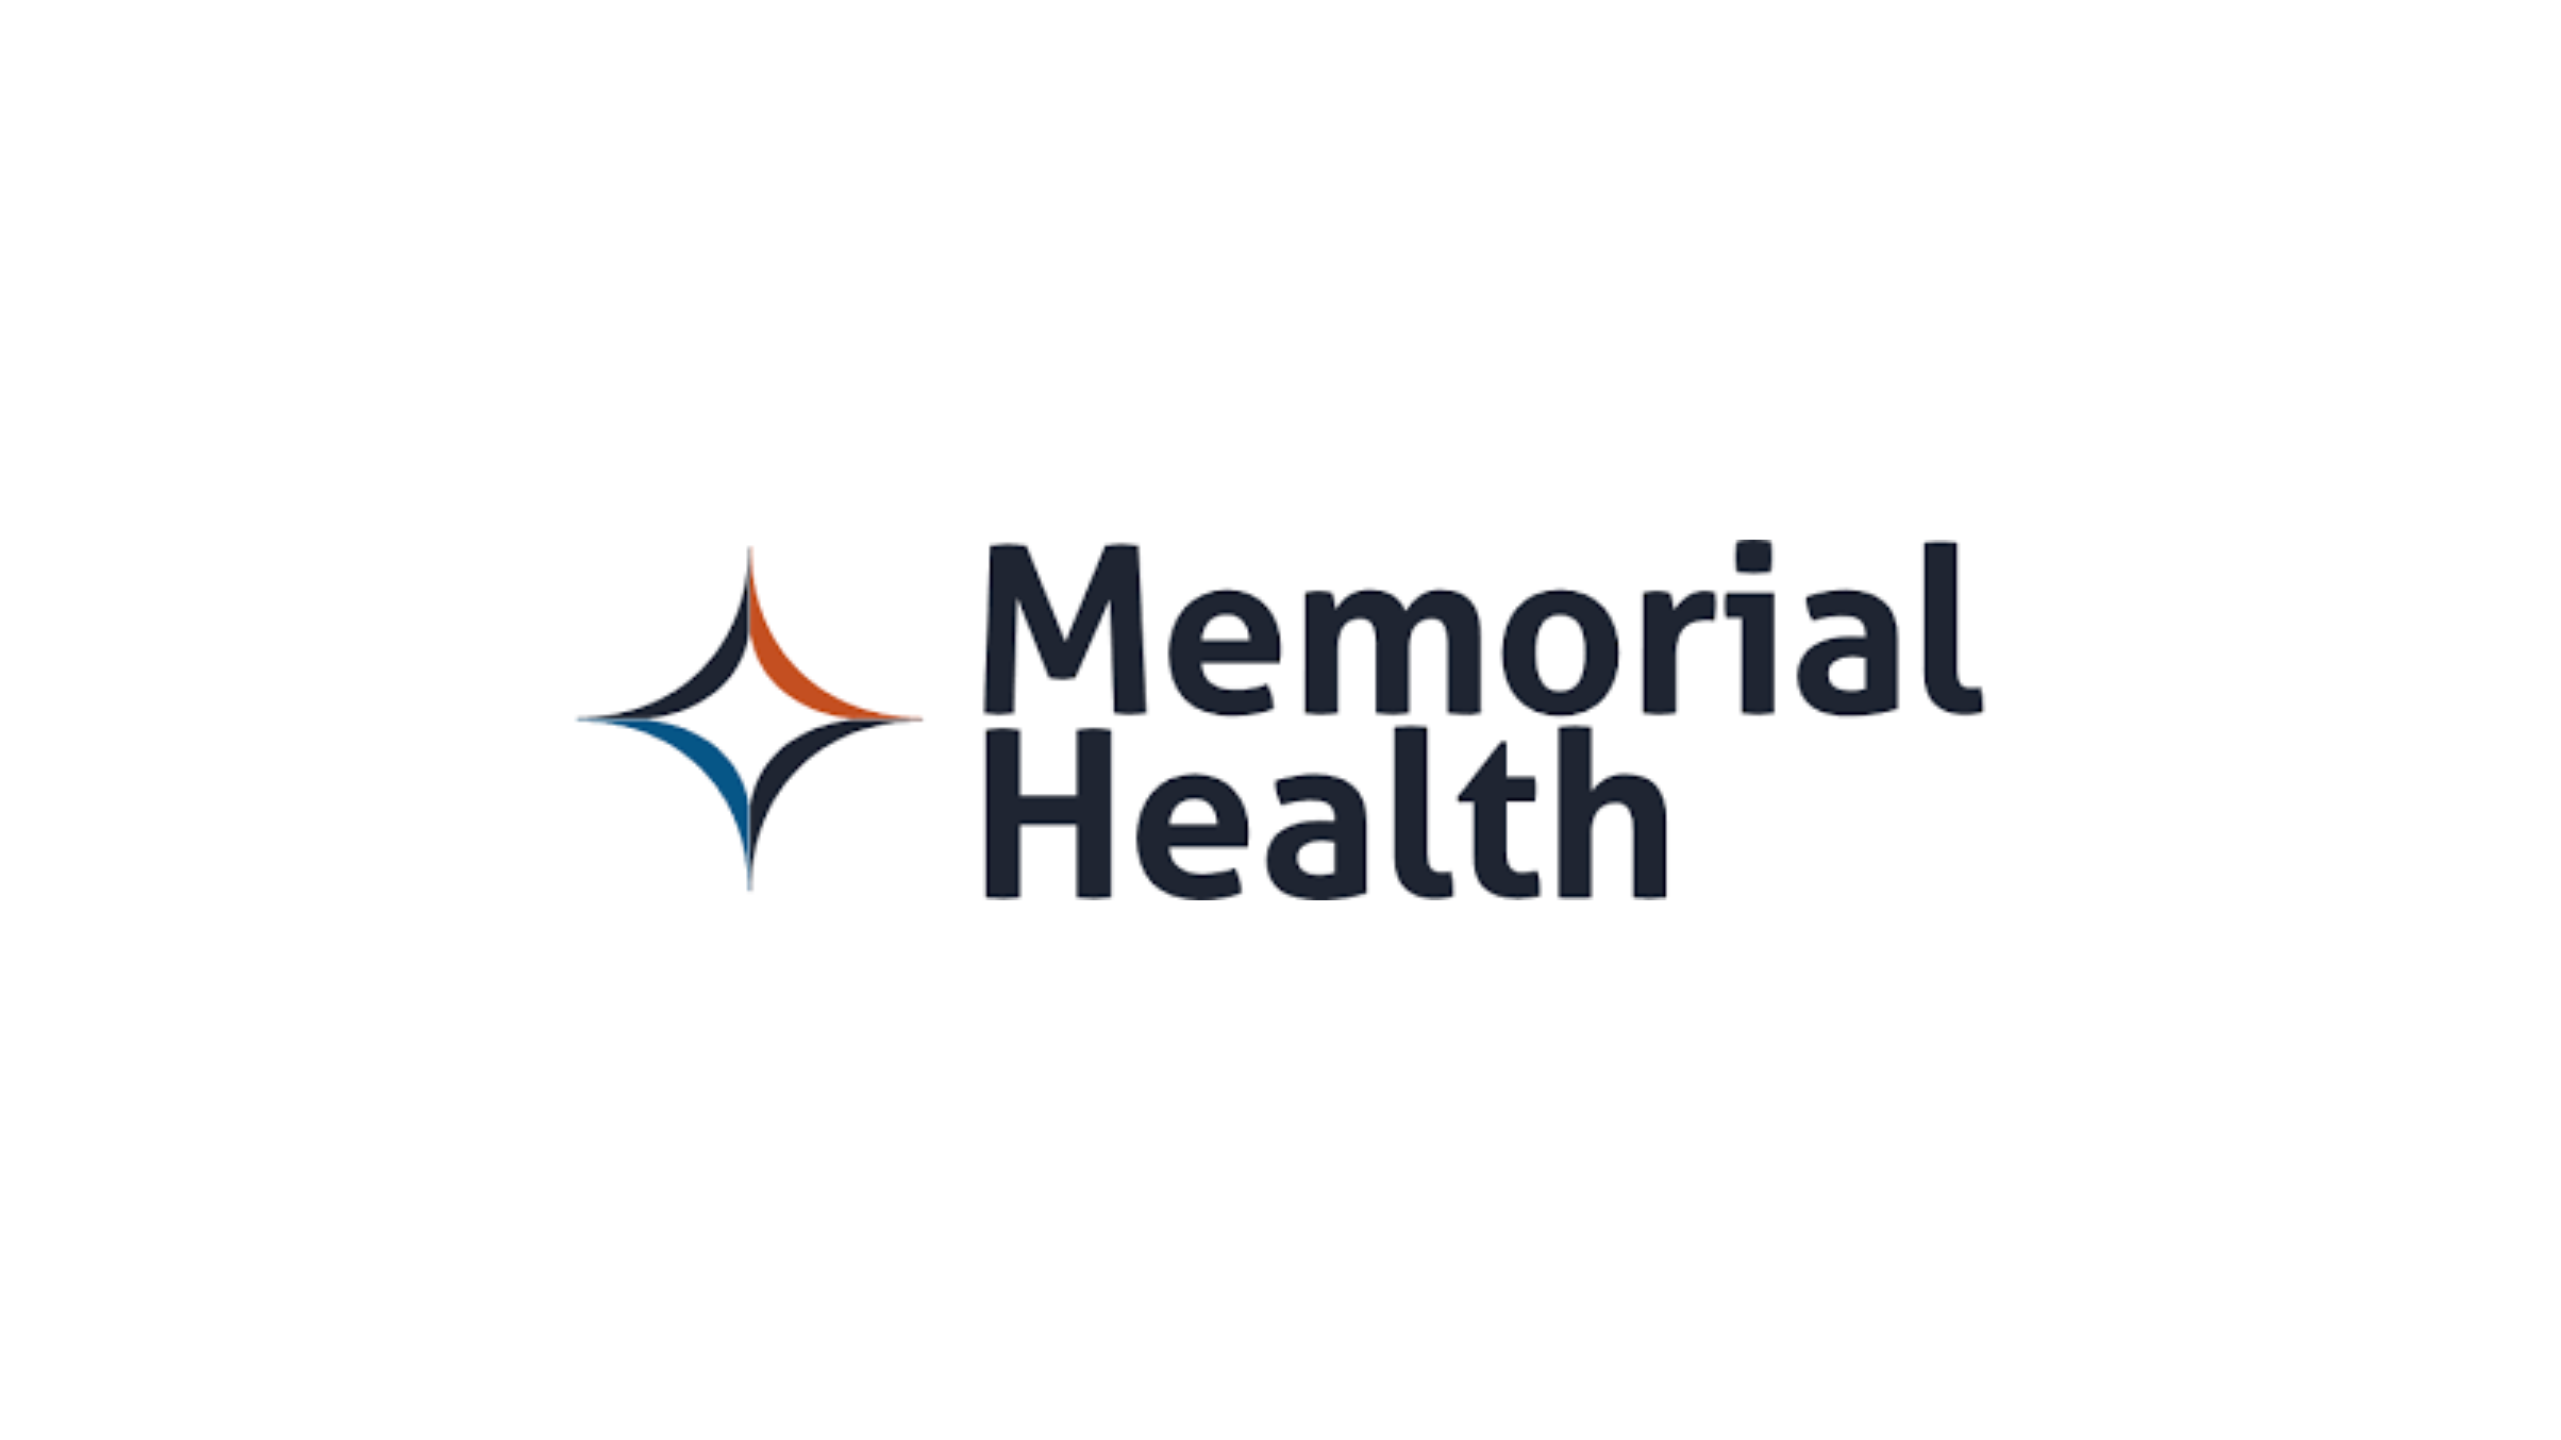 Memorial Health Services